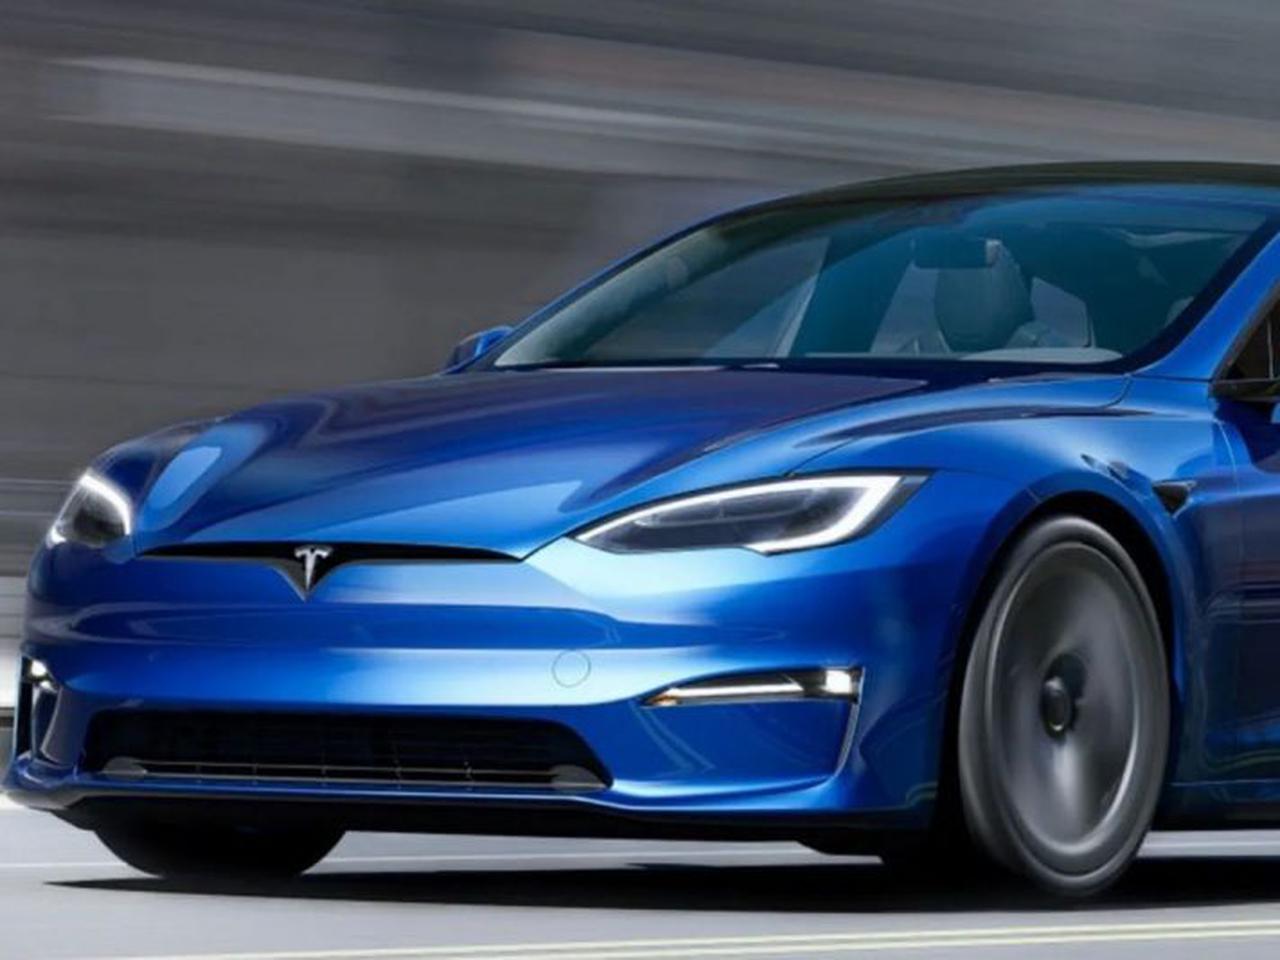 Таким чином, Tesla Model S Plaid демонструє прийдешнє спрямування автомобільної індустрії, де електричні автомобілі стають все більш ефективними та швидкими, розкриваючи нові можливості для автомобілістів.